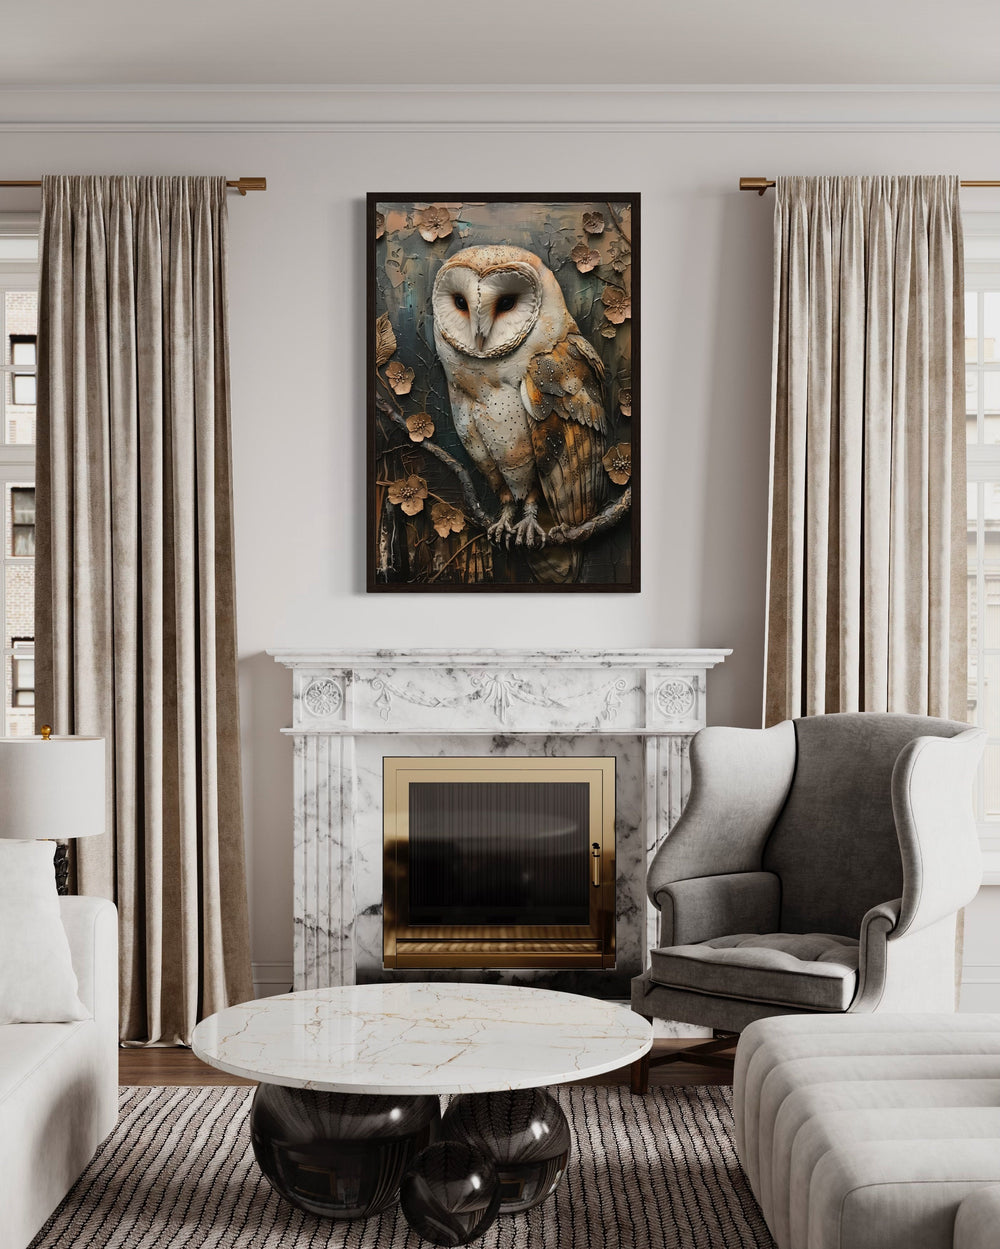 Barn Owl Rustic Farmhouse Framed Canvas Wall Art above fireplace